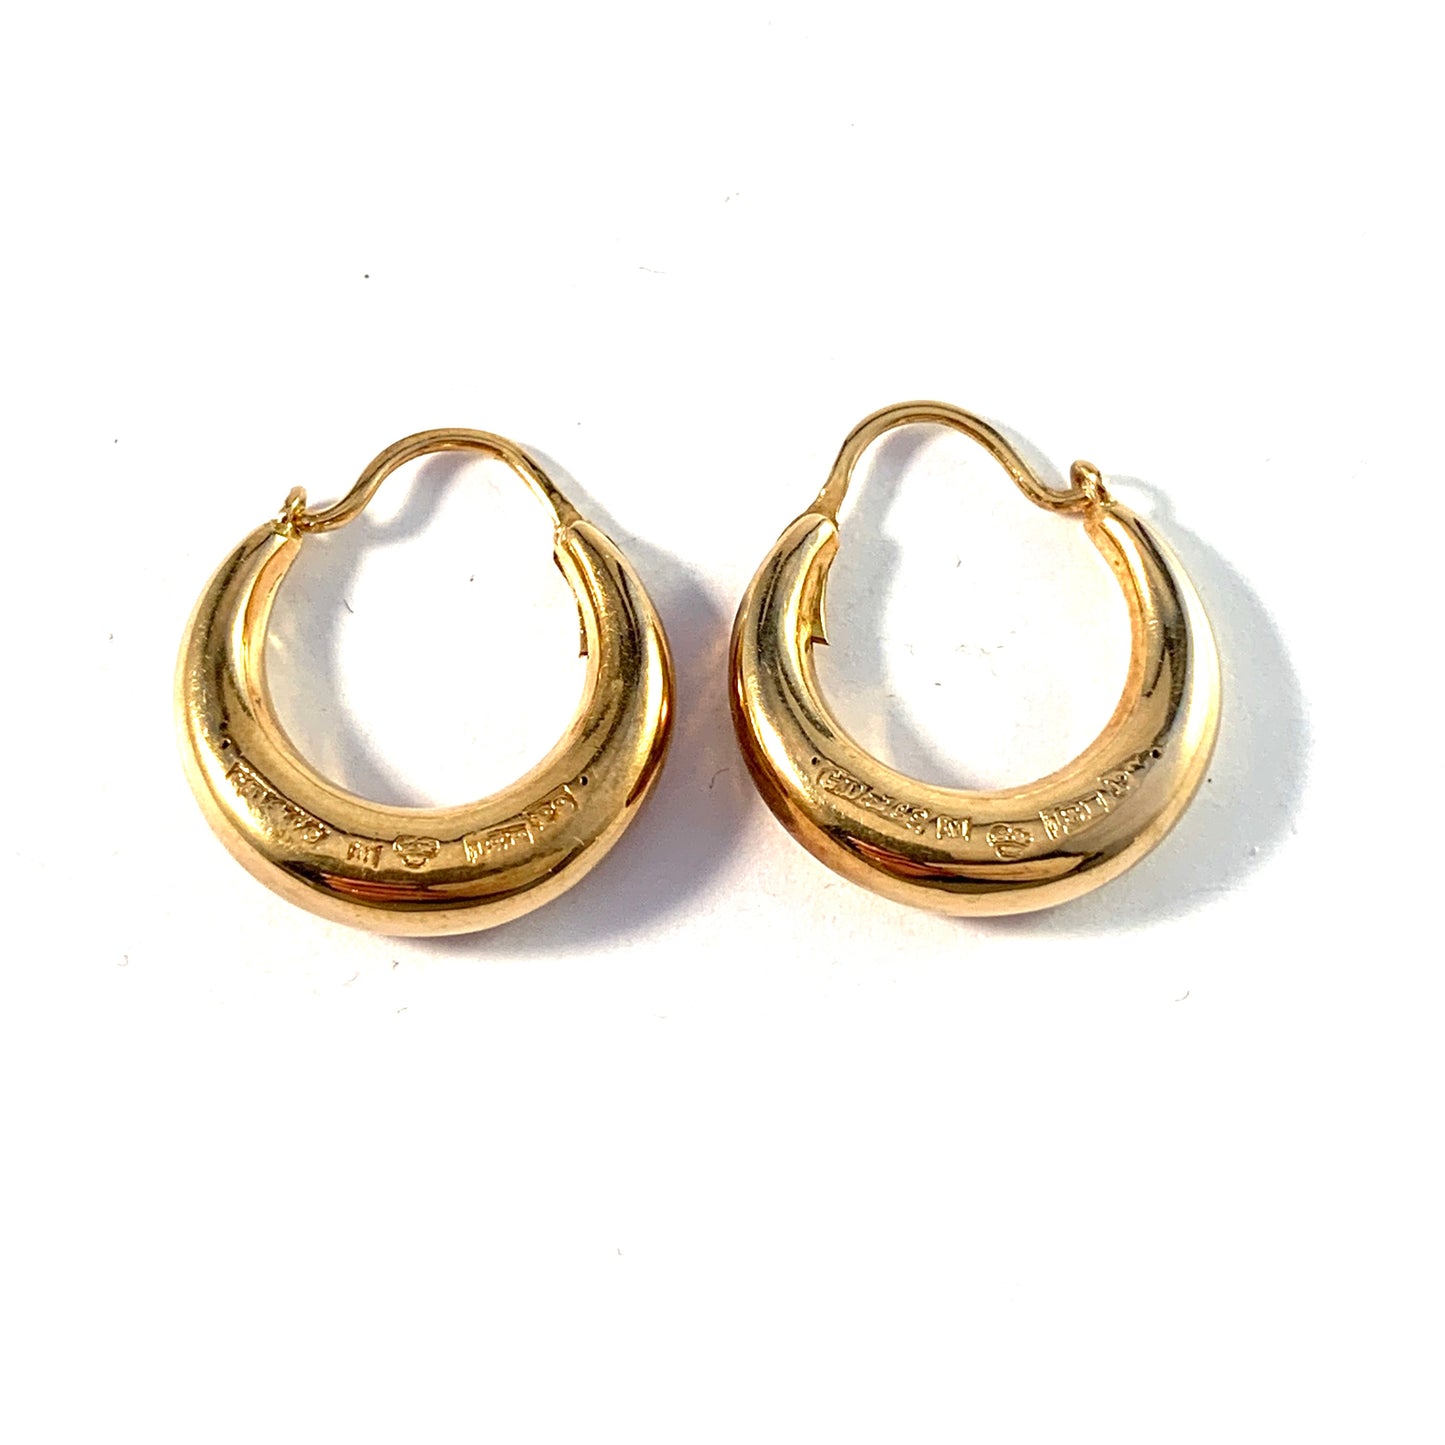 G Dahlgren, Sweden 1965. Vintage 18k Gold Earrings.